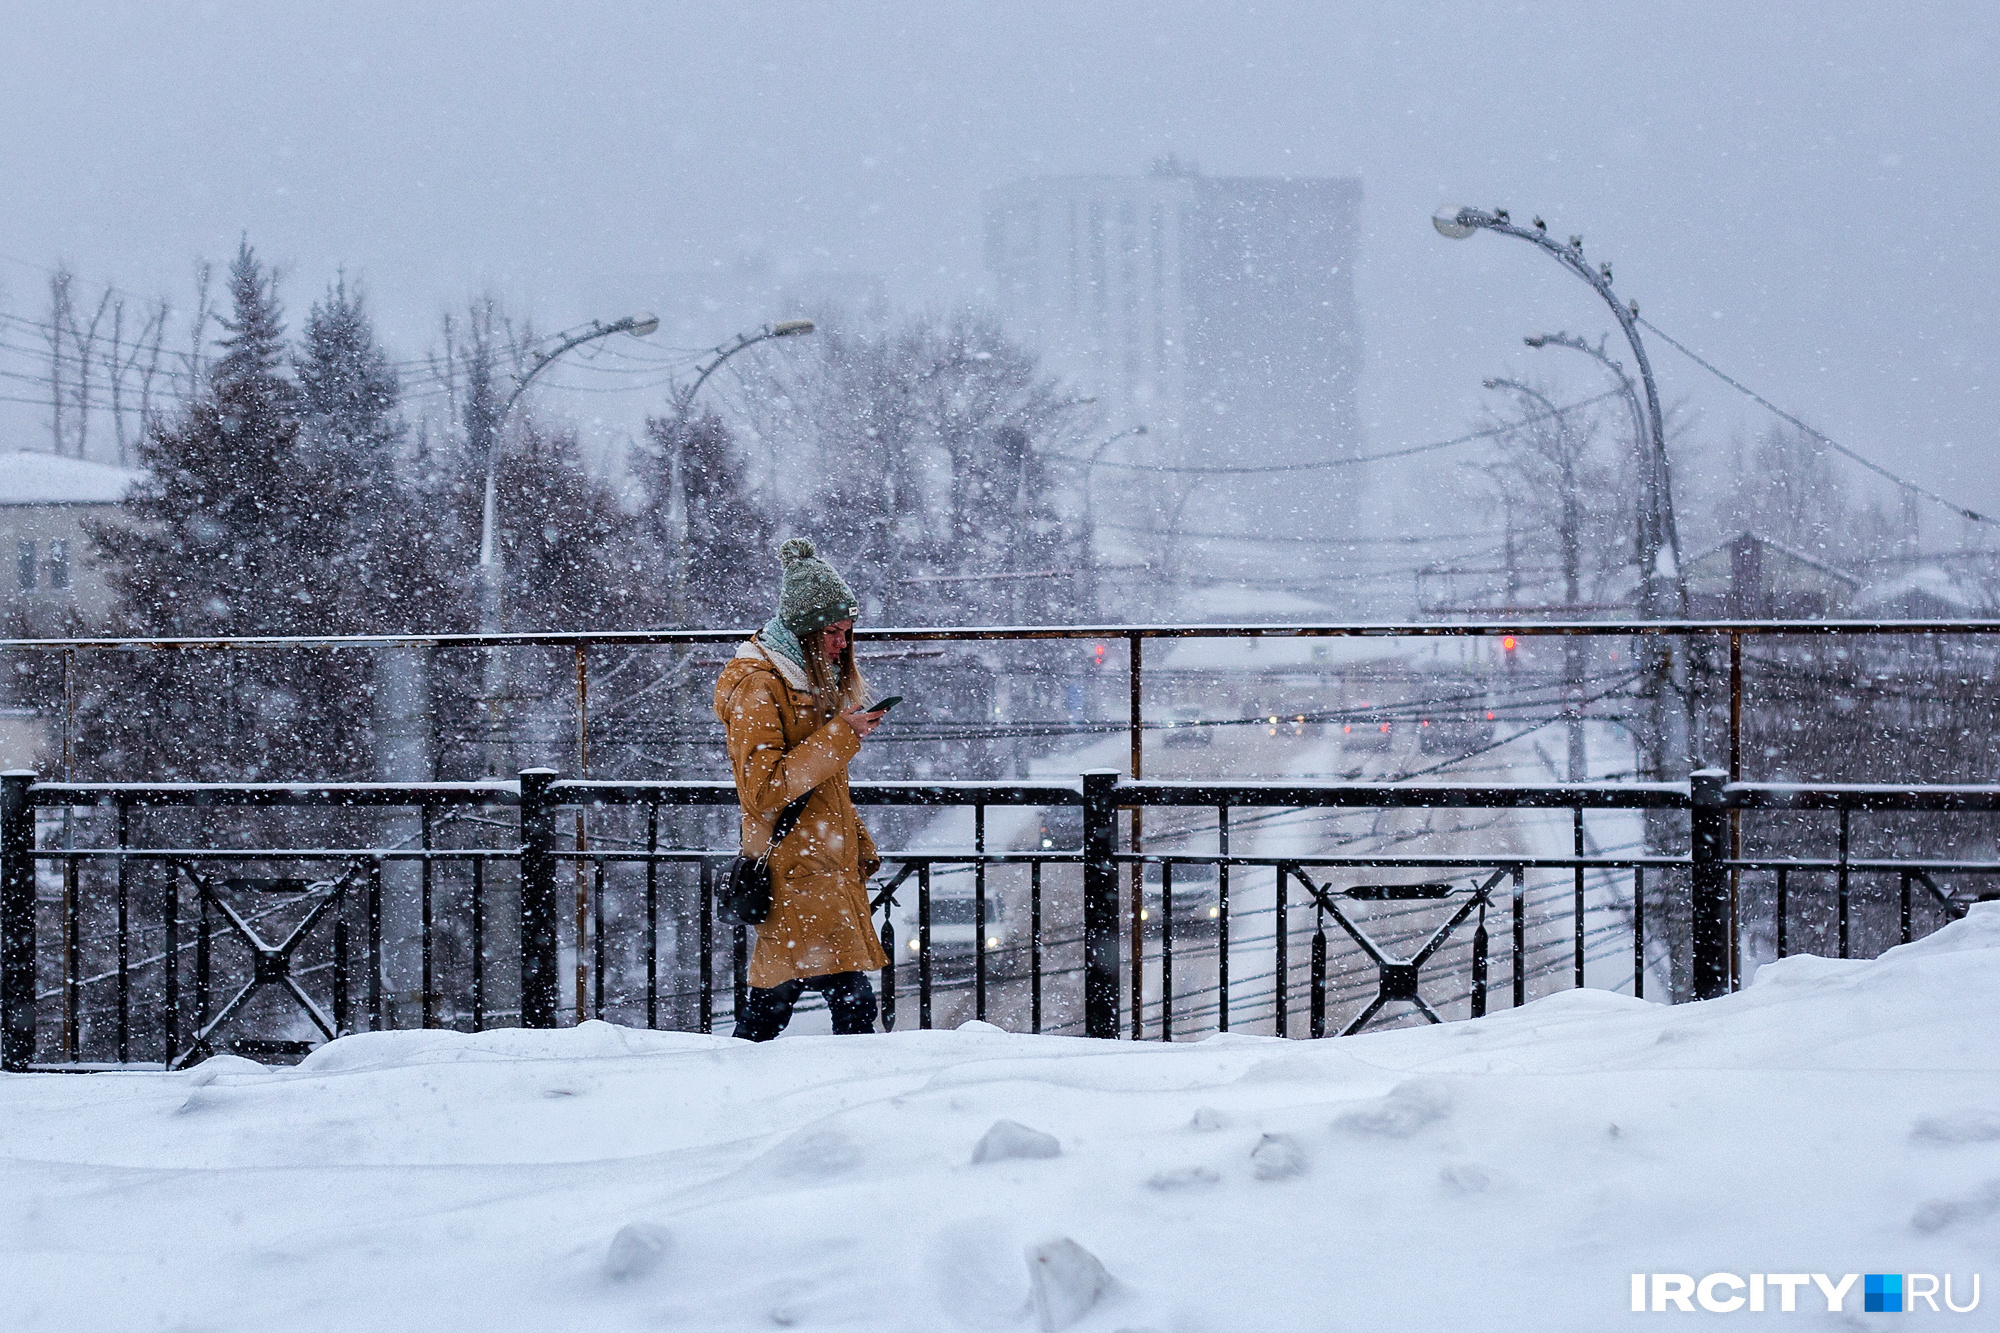 Снег идет почти сутки. Иркутск замело: 20 фотографий идеально белого города